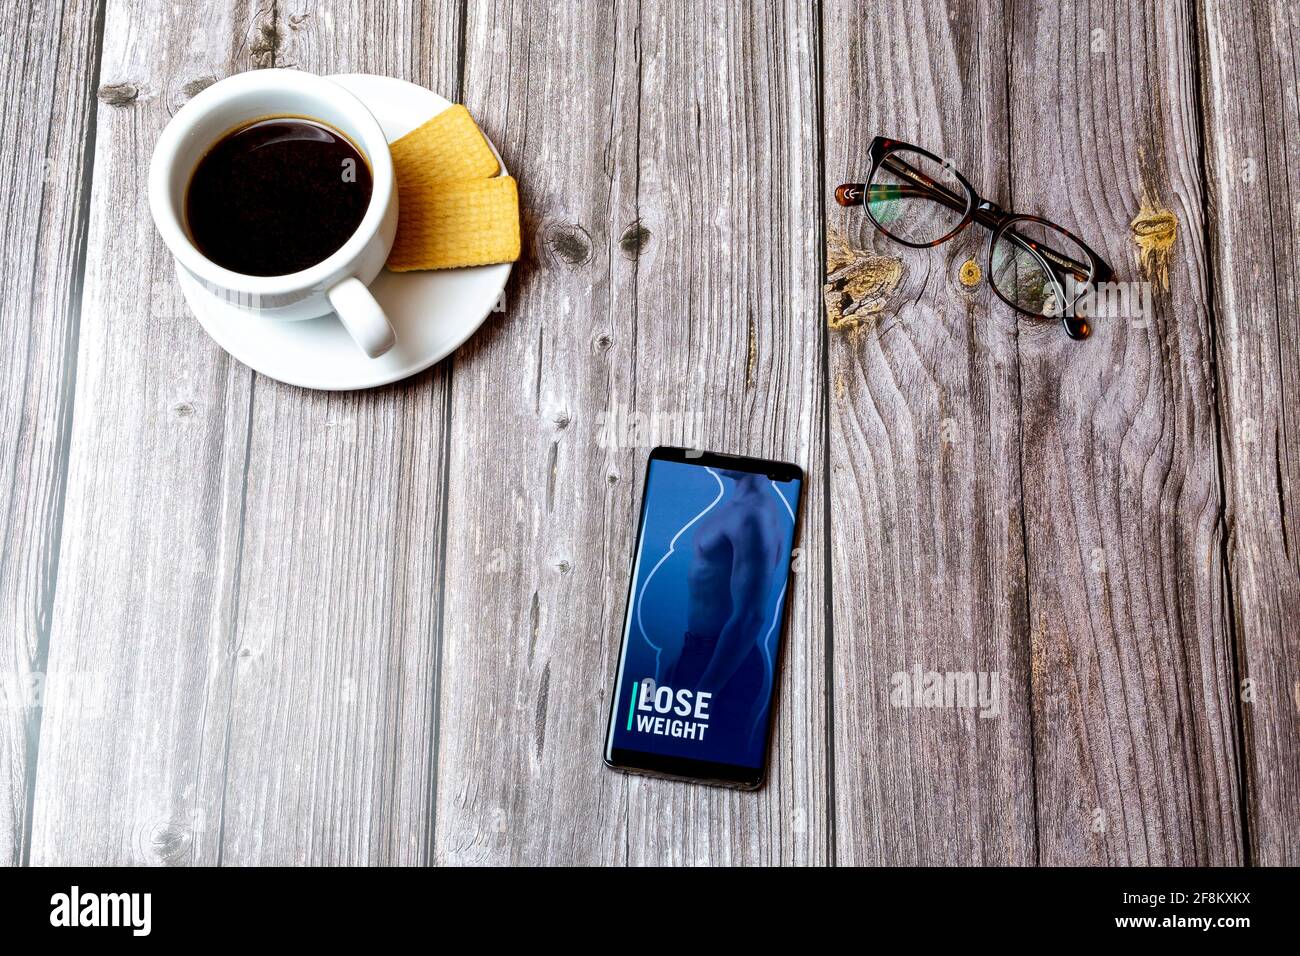 Ein Mobiltelefon oder Mobiltelefon, das auf einem Holzboden liegt Tabelle mit der App „Männer verlieren Gewicht“ auf dem Bildschirm Stockfoto